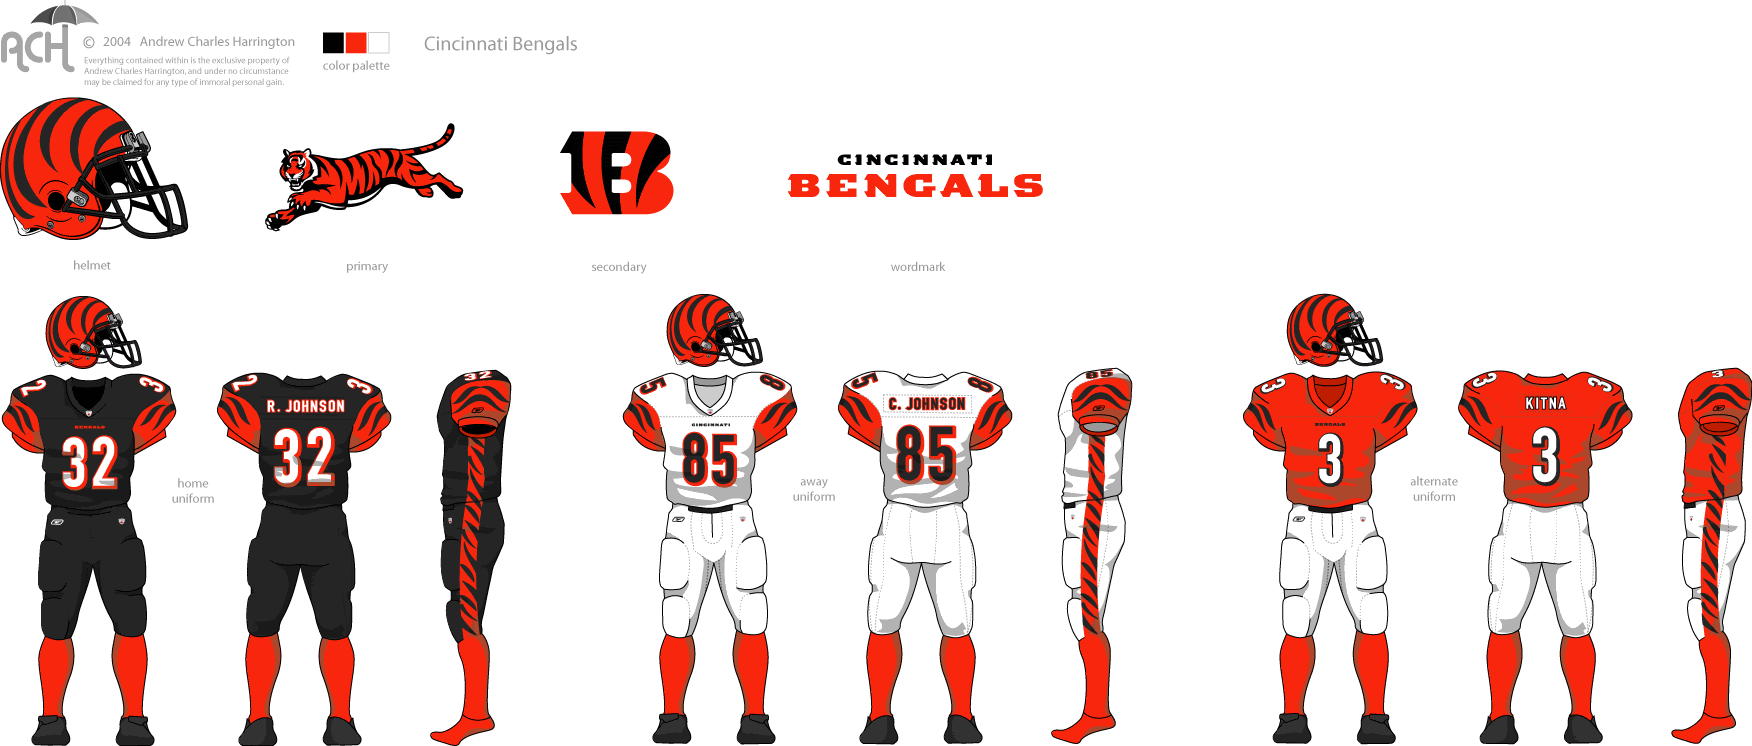 Cincinnati-Bengals.gif